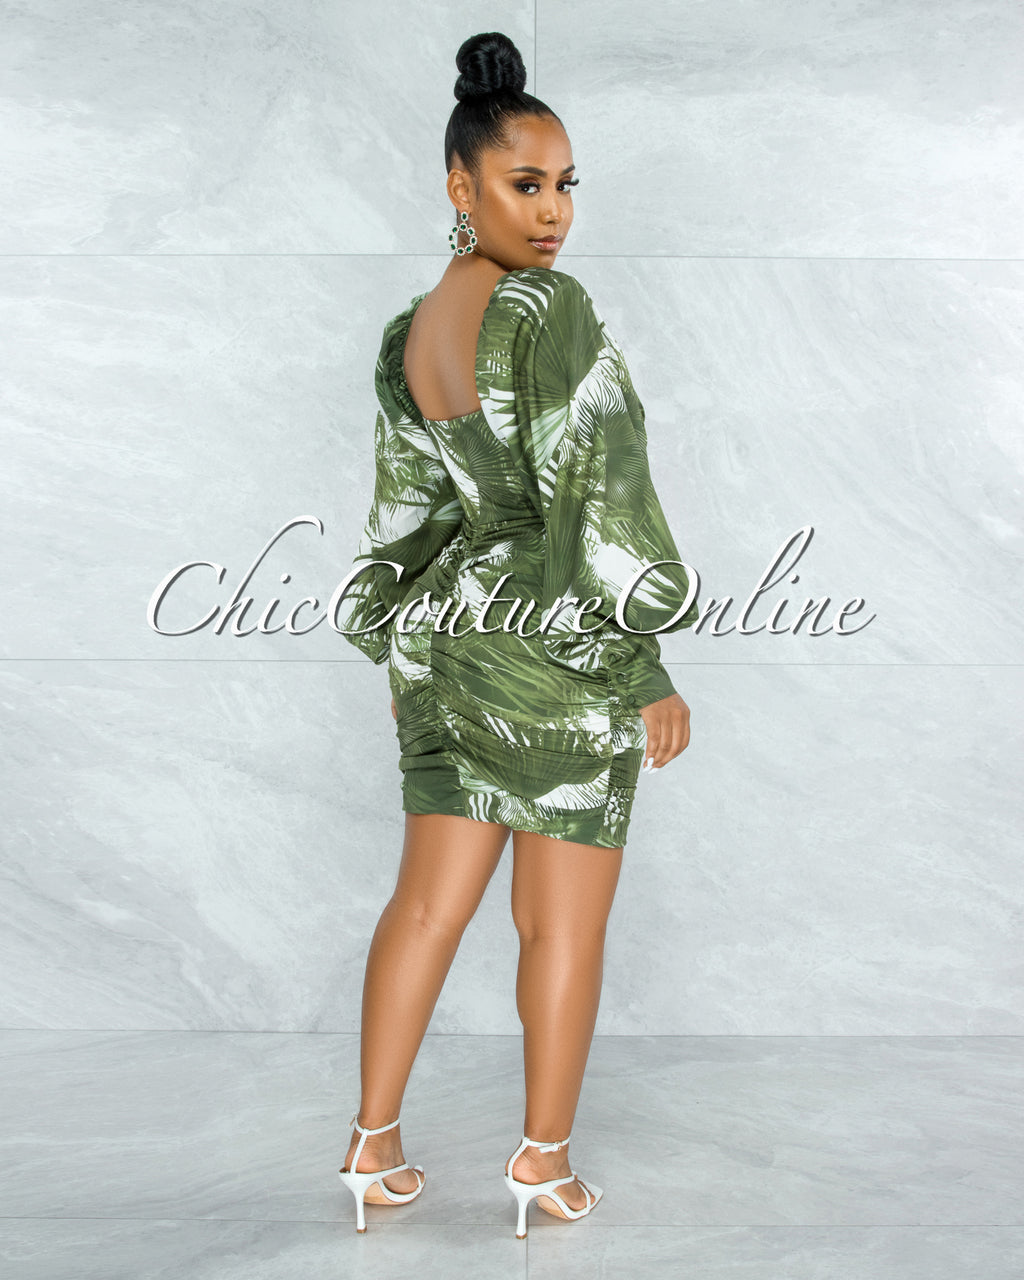 *Lemuela Olive Green Palm Print Ruched Mini Dress